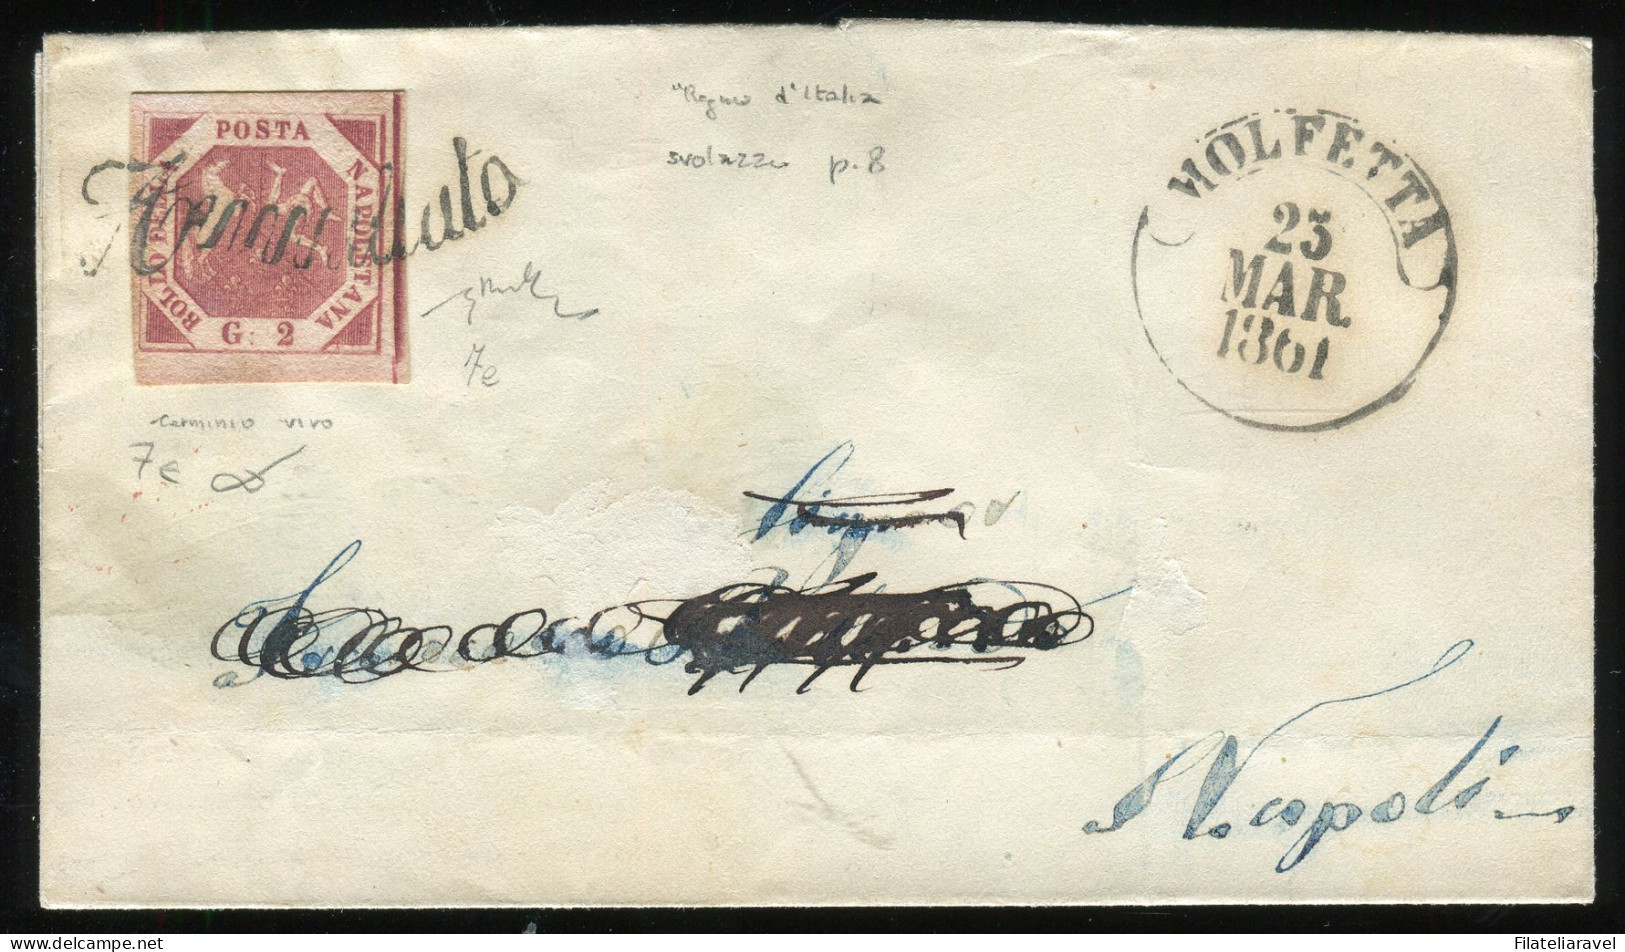 Ltr 1858 - Napoli - Lettera Da Molfetta A Napoli, 2 Gr Carminio Vivo III (7e) Svolazzo Tipo 26 Punti 8, Cert. Viesti - Neapel